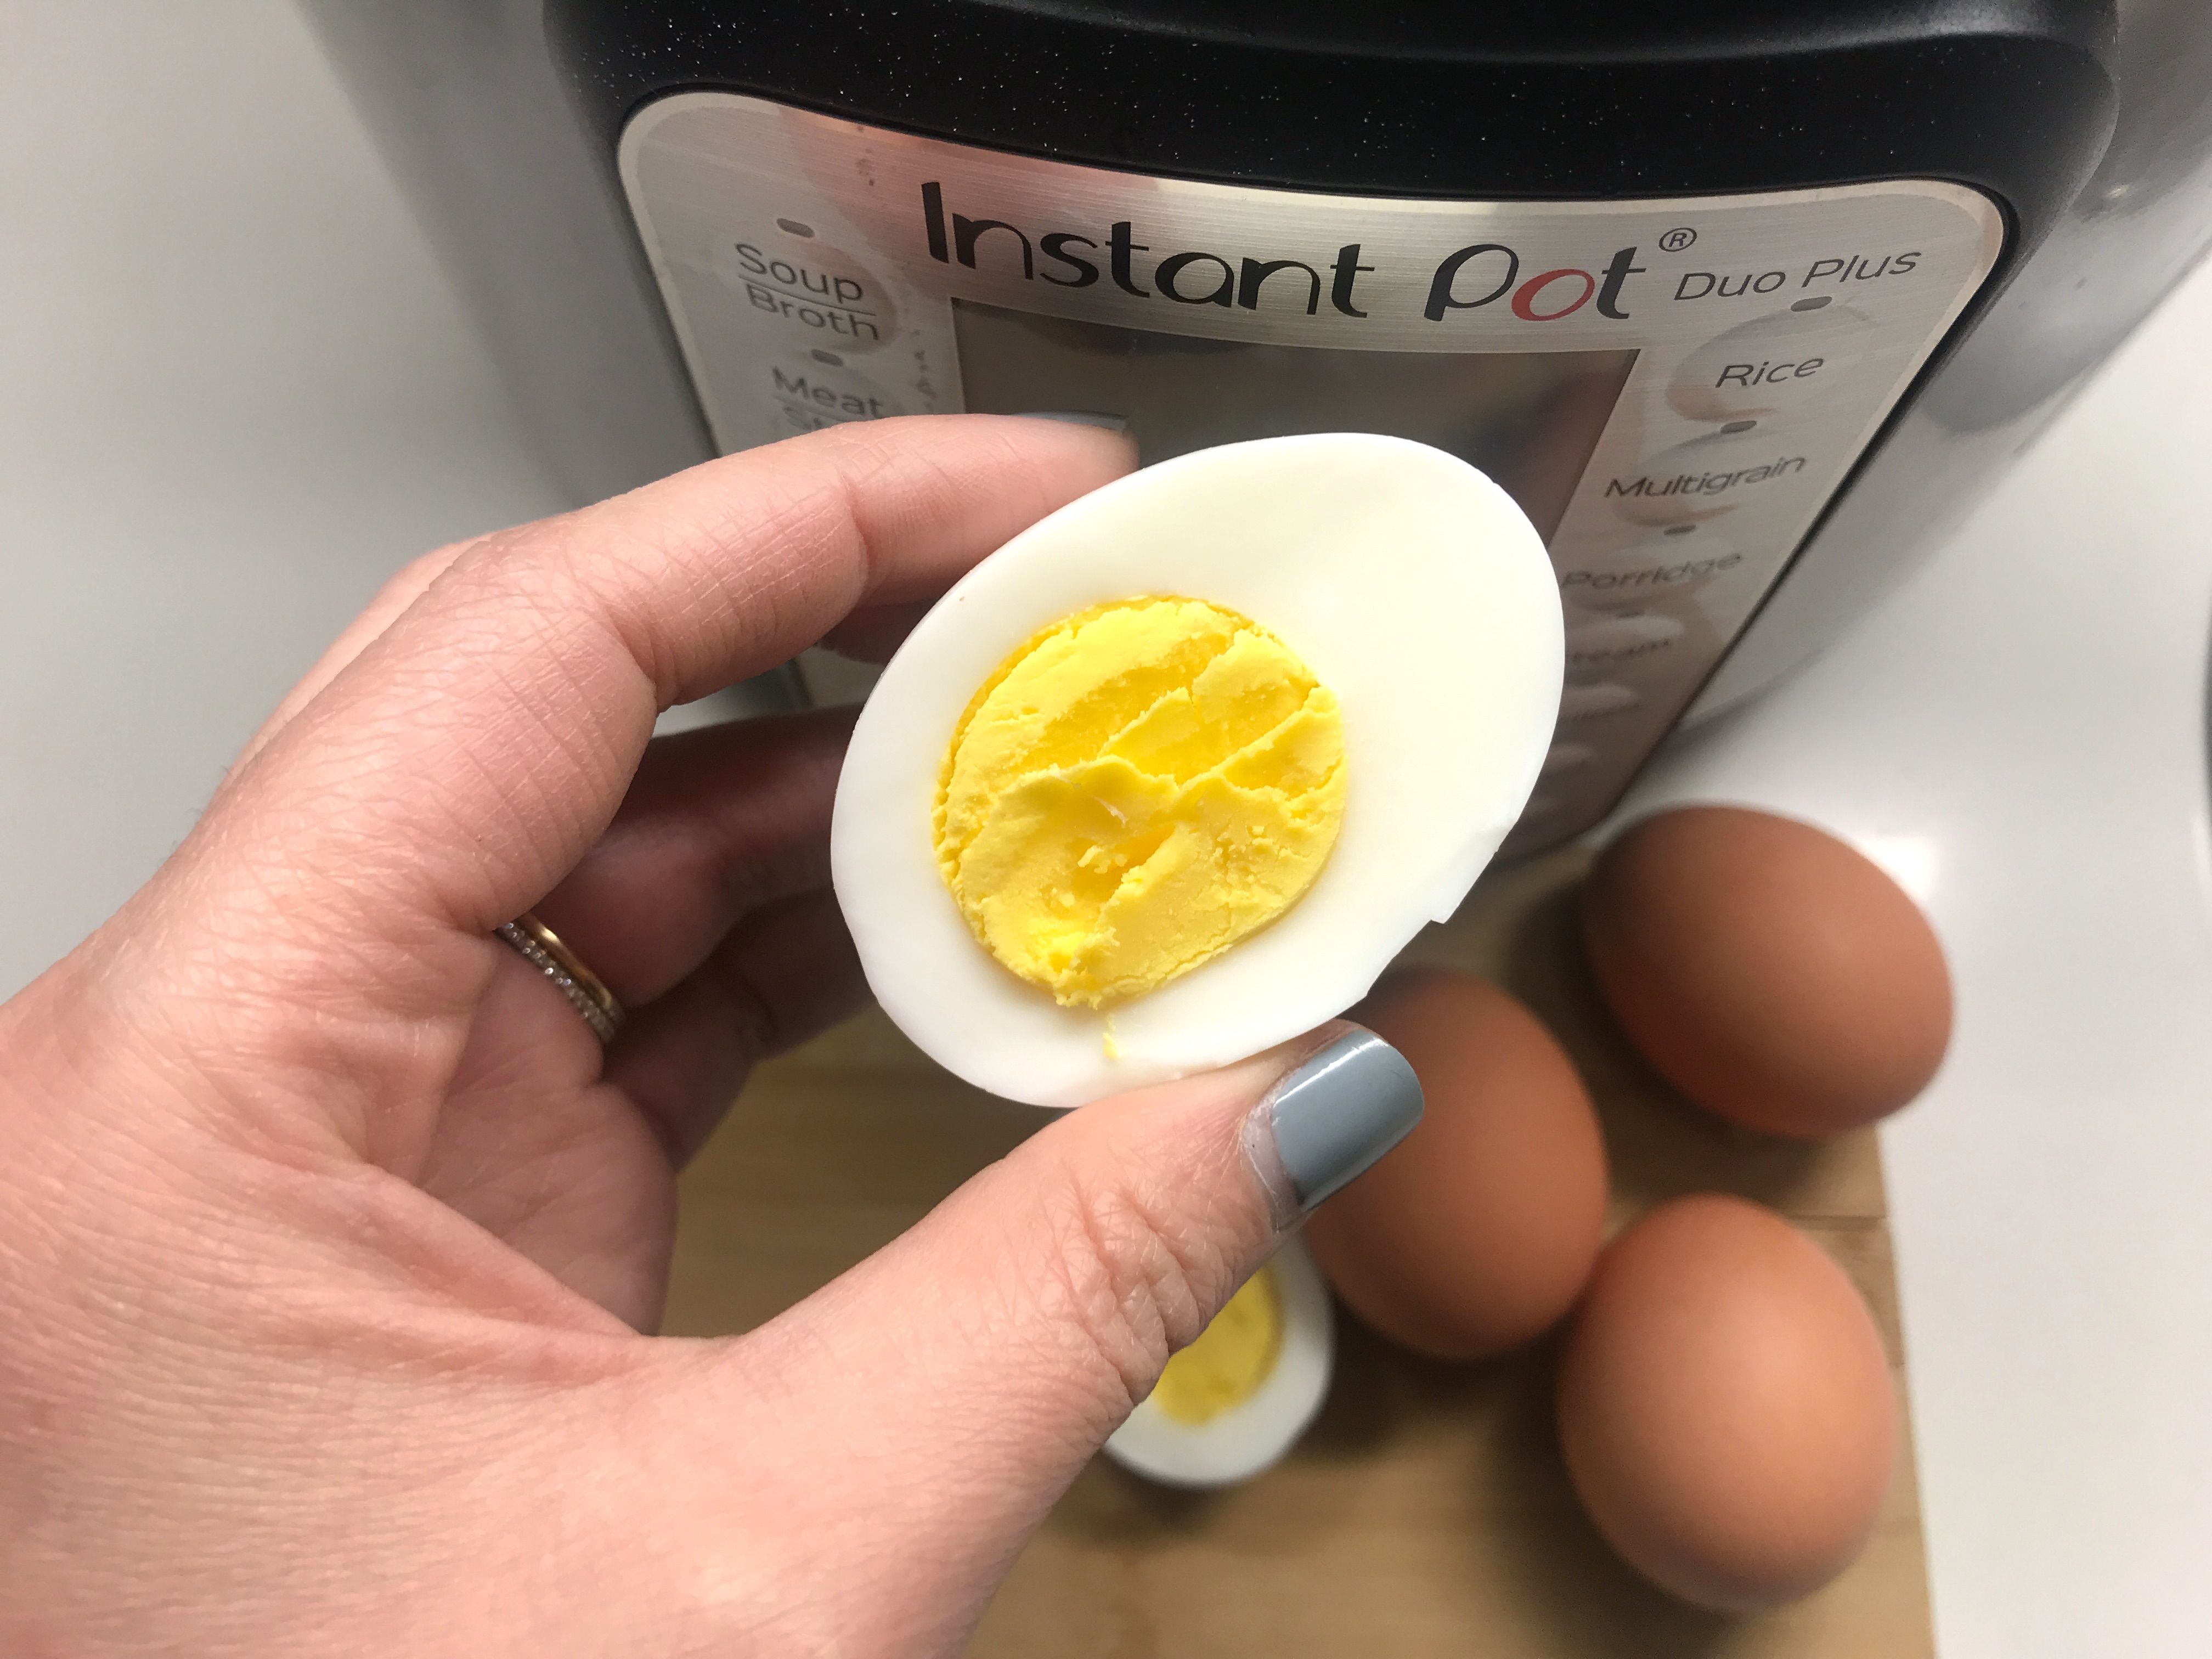 https://hips.hearstapps.com/hmg-prod/images/instant-pot-eggs-1549062192.jpg